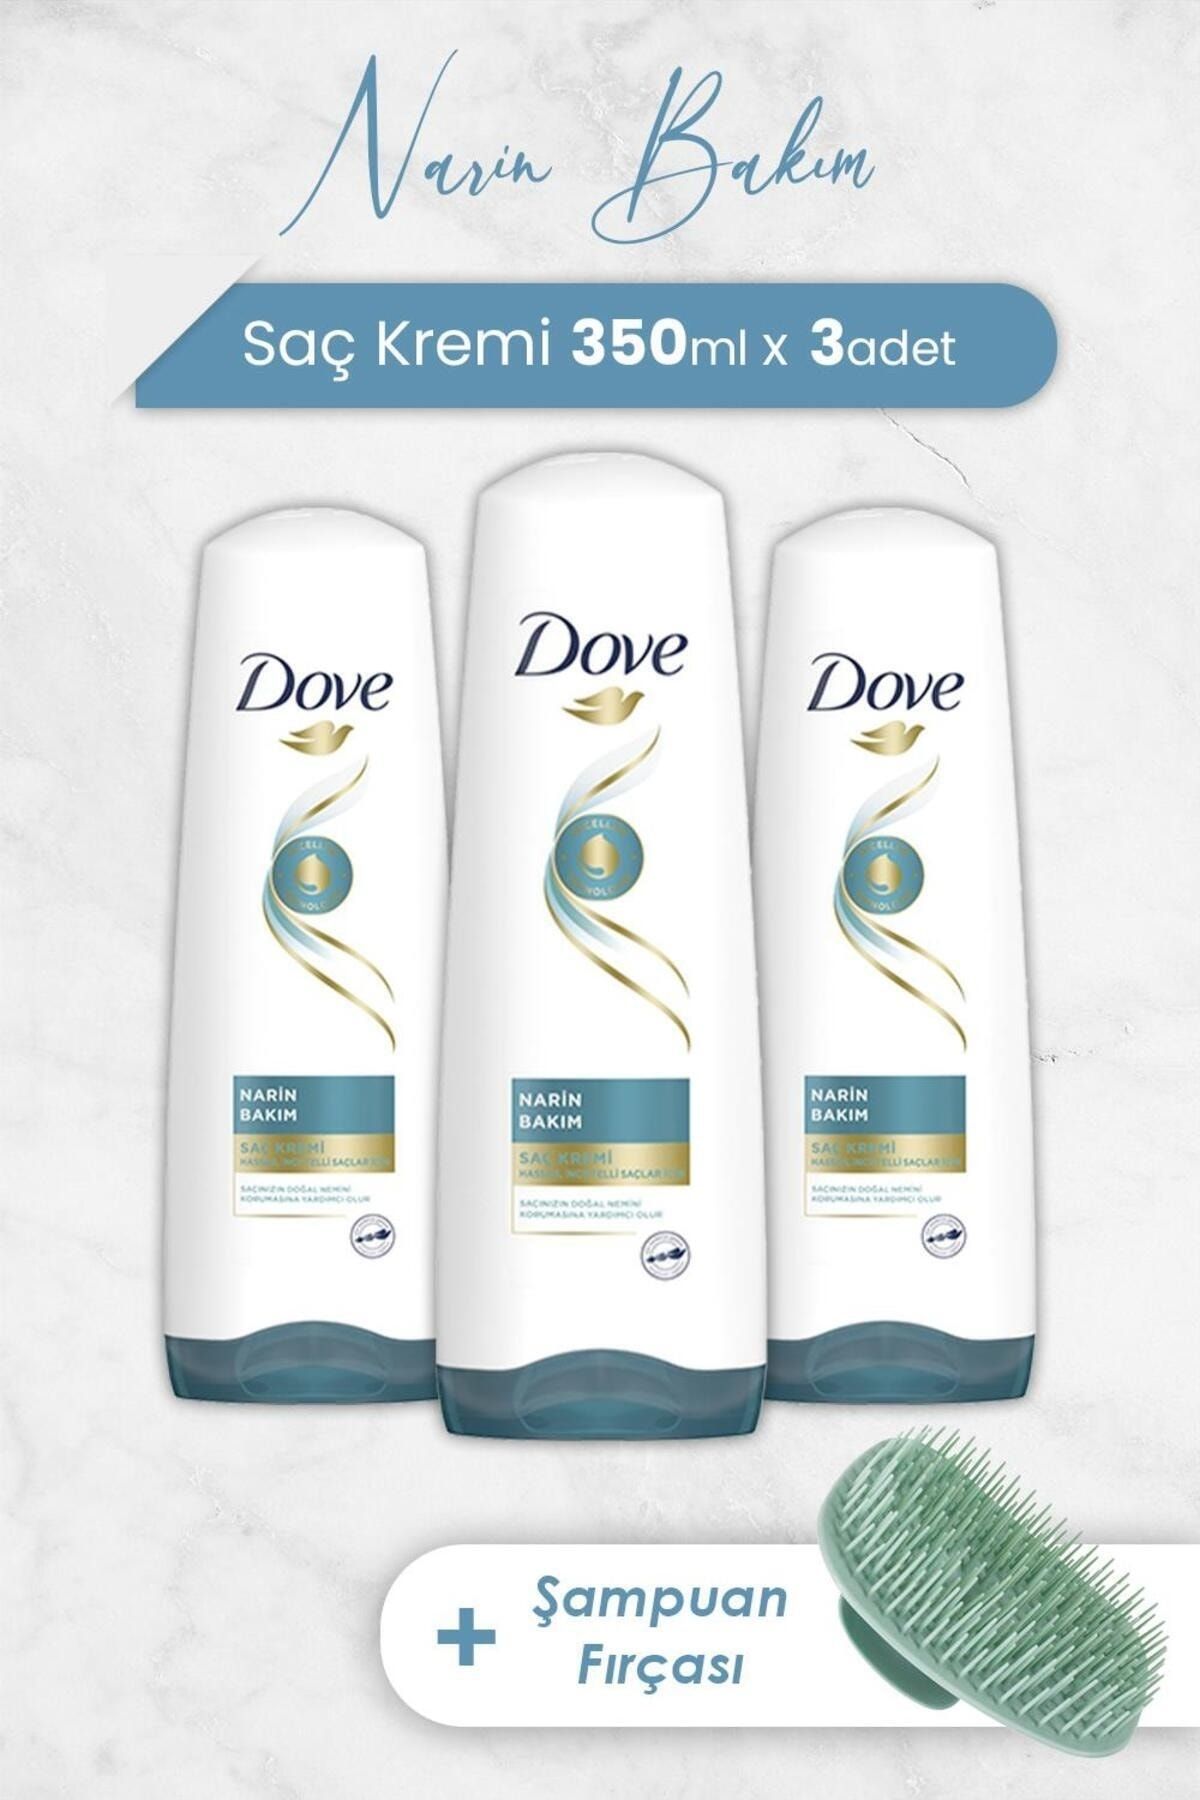 Dove Micellar Narin Bakım Saç Kremi 350 ml x 3 Adet ve Şampuan Fırçası